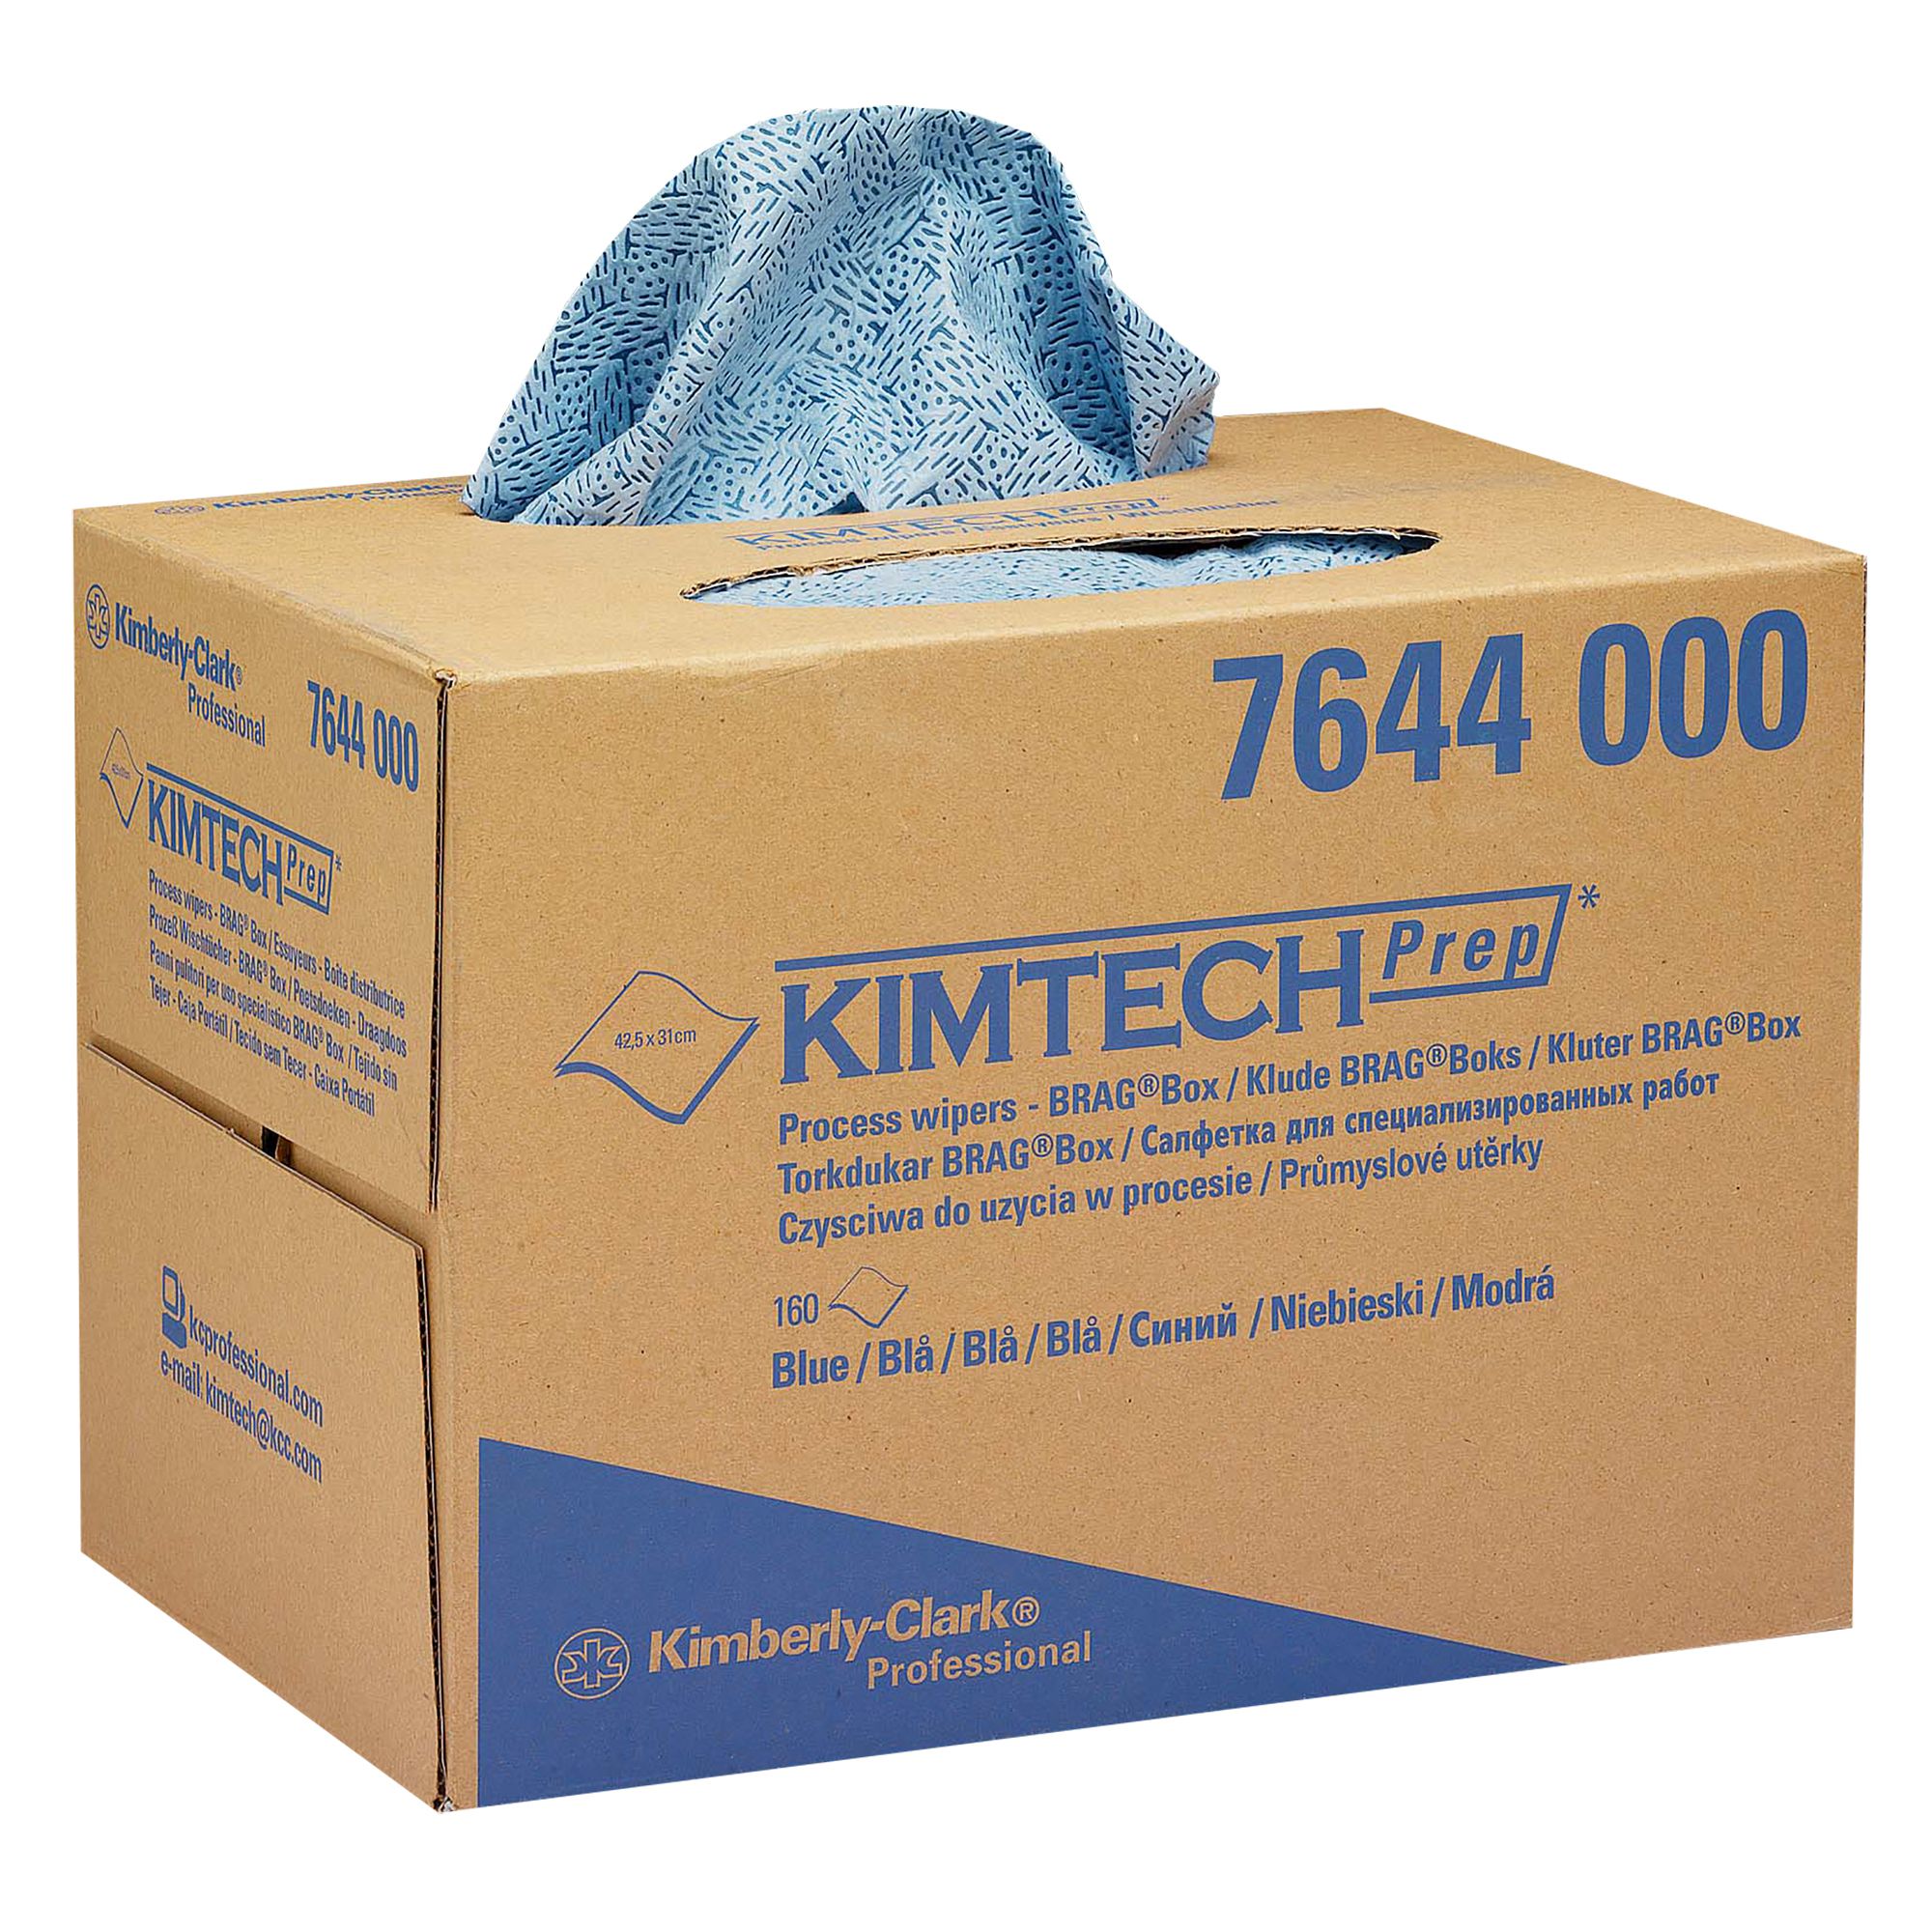 7644 Протирочный материал Kimtech Prep для очистки с растворителями - 1 коробка 160 листов